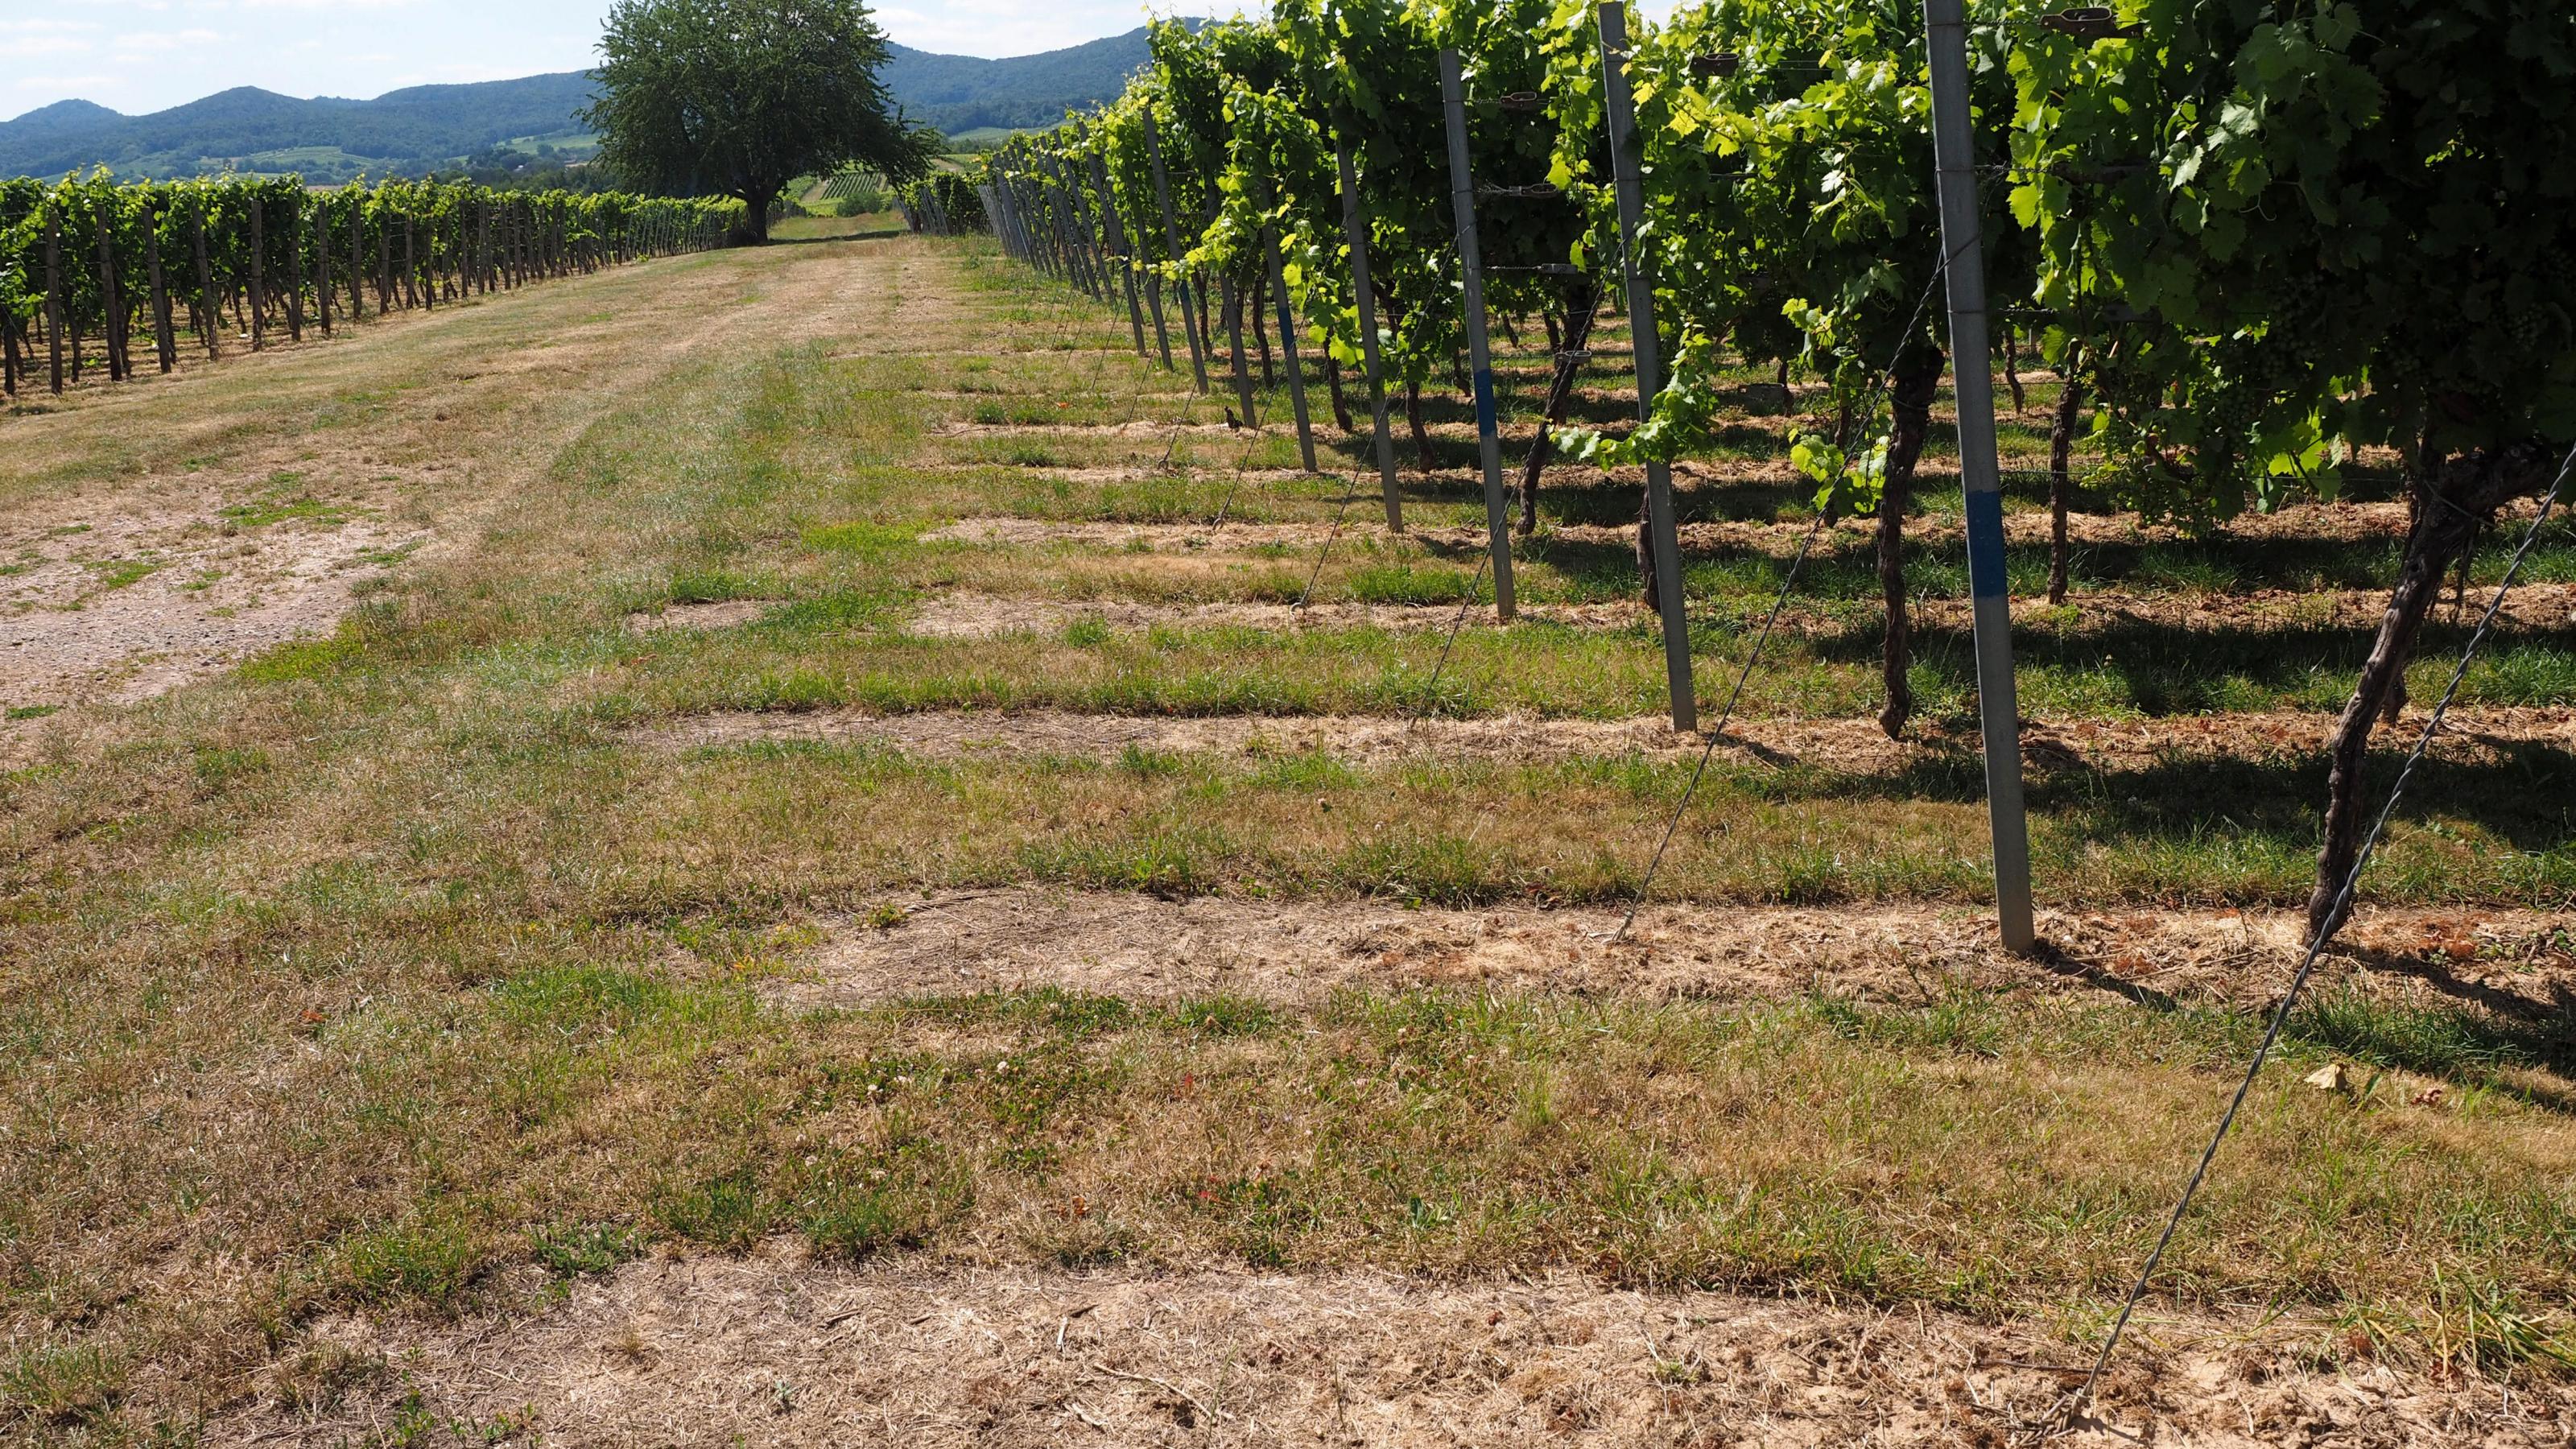 Halbtotale Weinbaugebiet. Gut sichtbar sind die bräunlichen Stellen unter den Weinstöcken. Dort kam Glyphosat zum Einsatz.